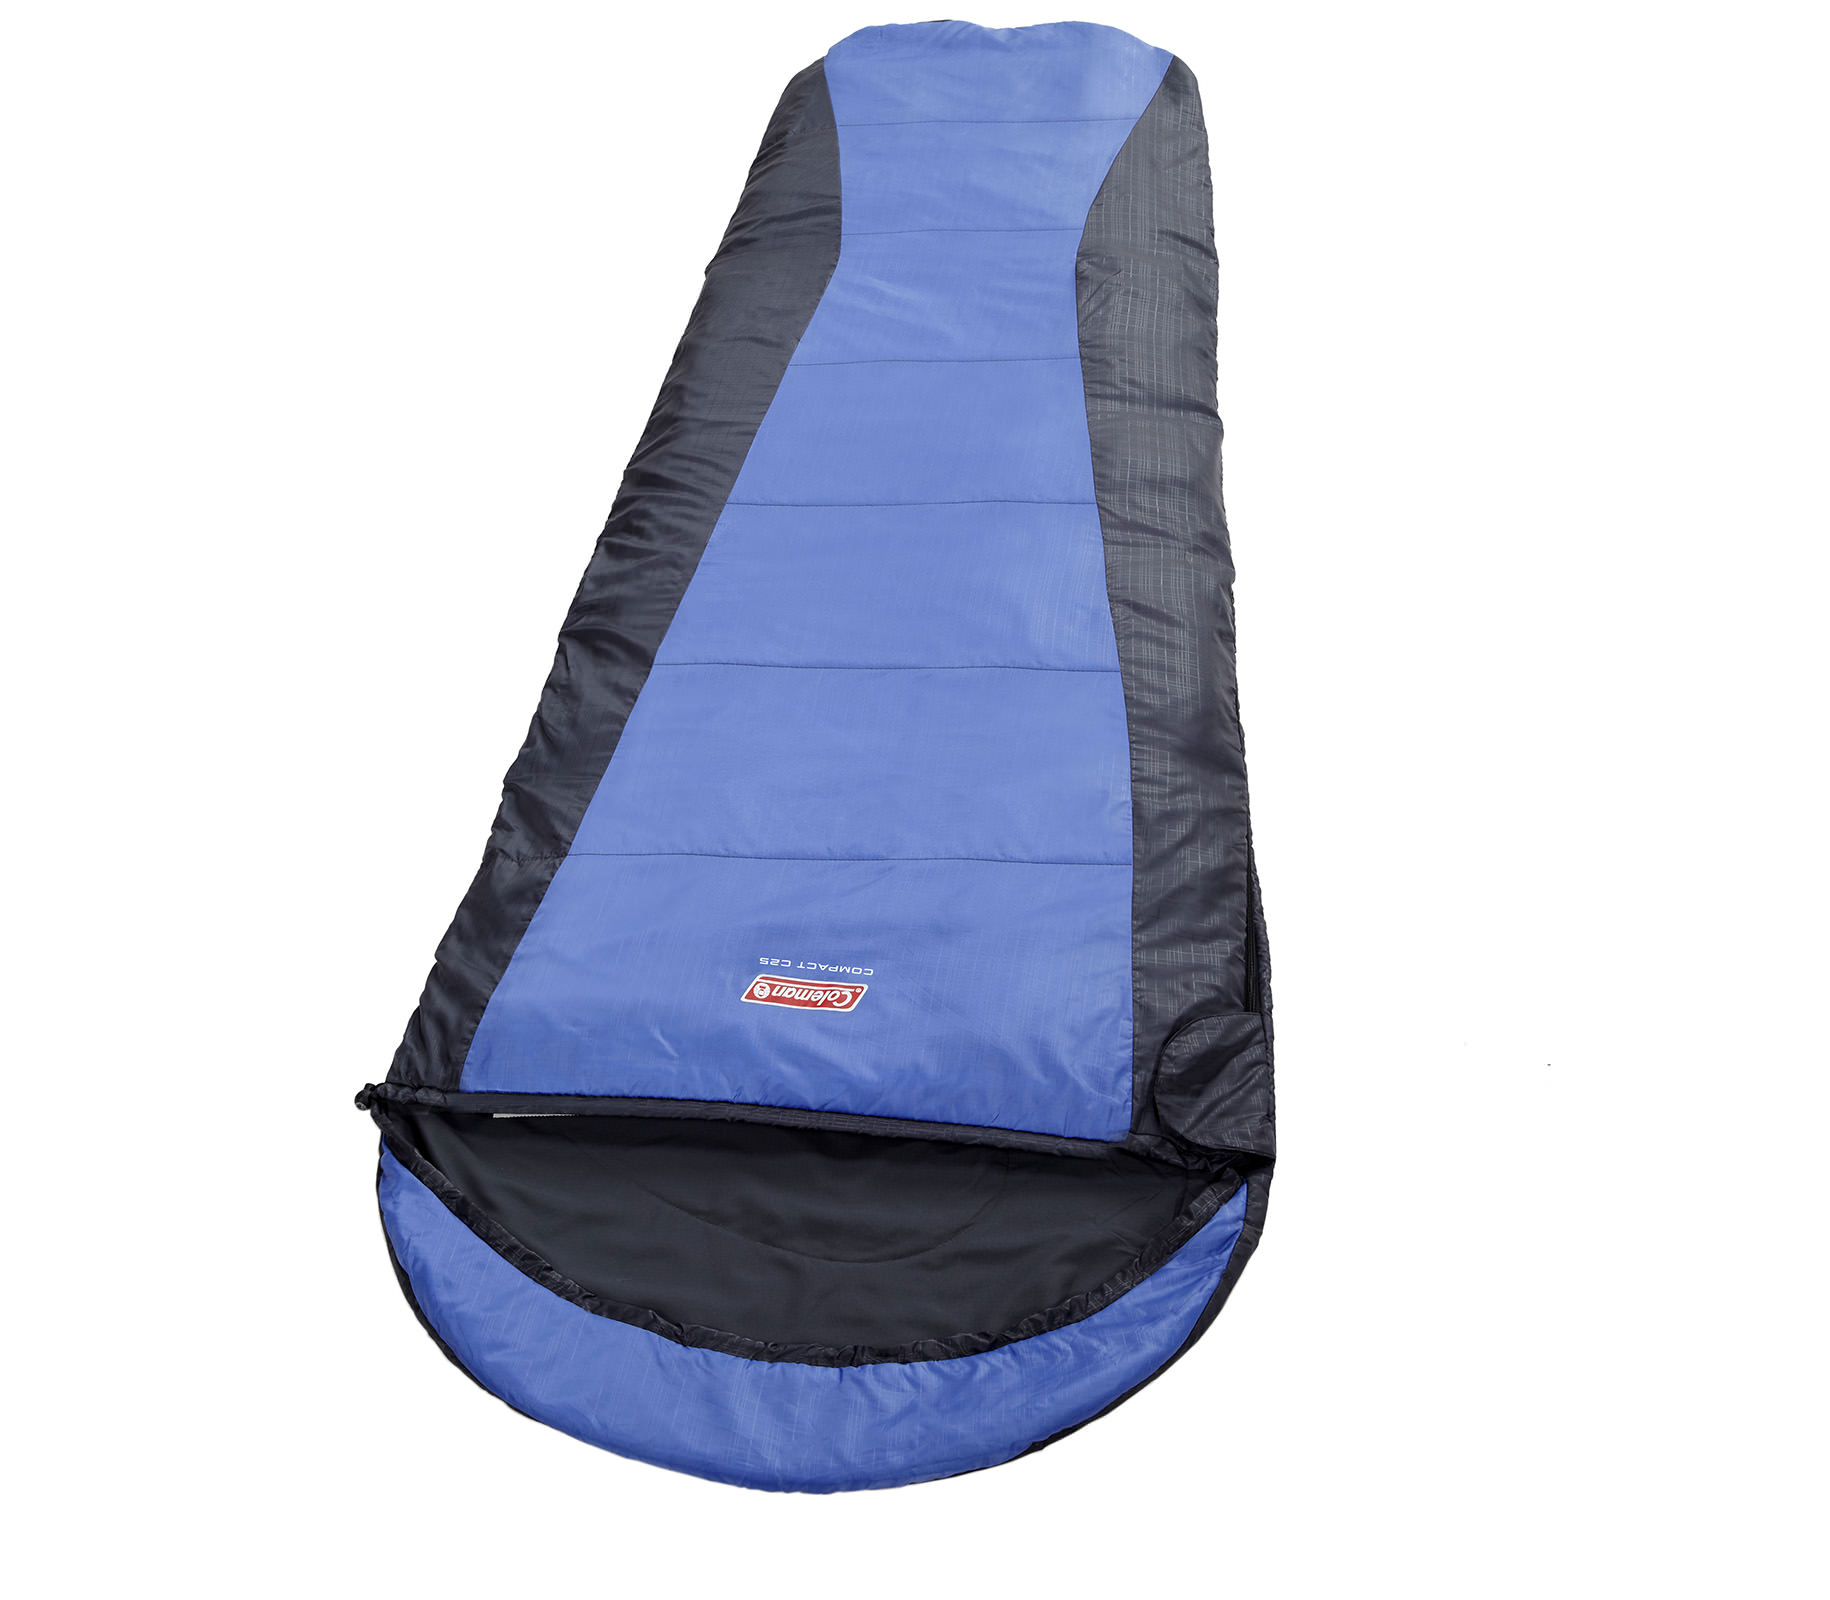 tui-ngu-coleman-c25-sleeping-bag-backpacking-2000015228-7403-wetrek_vn